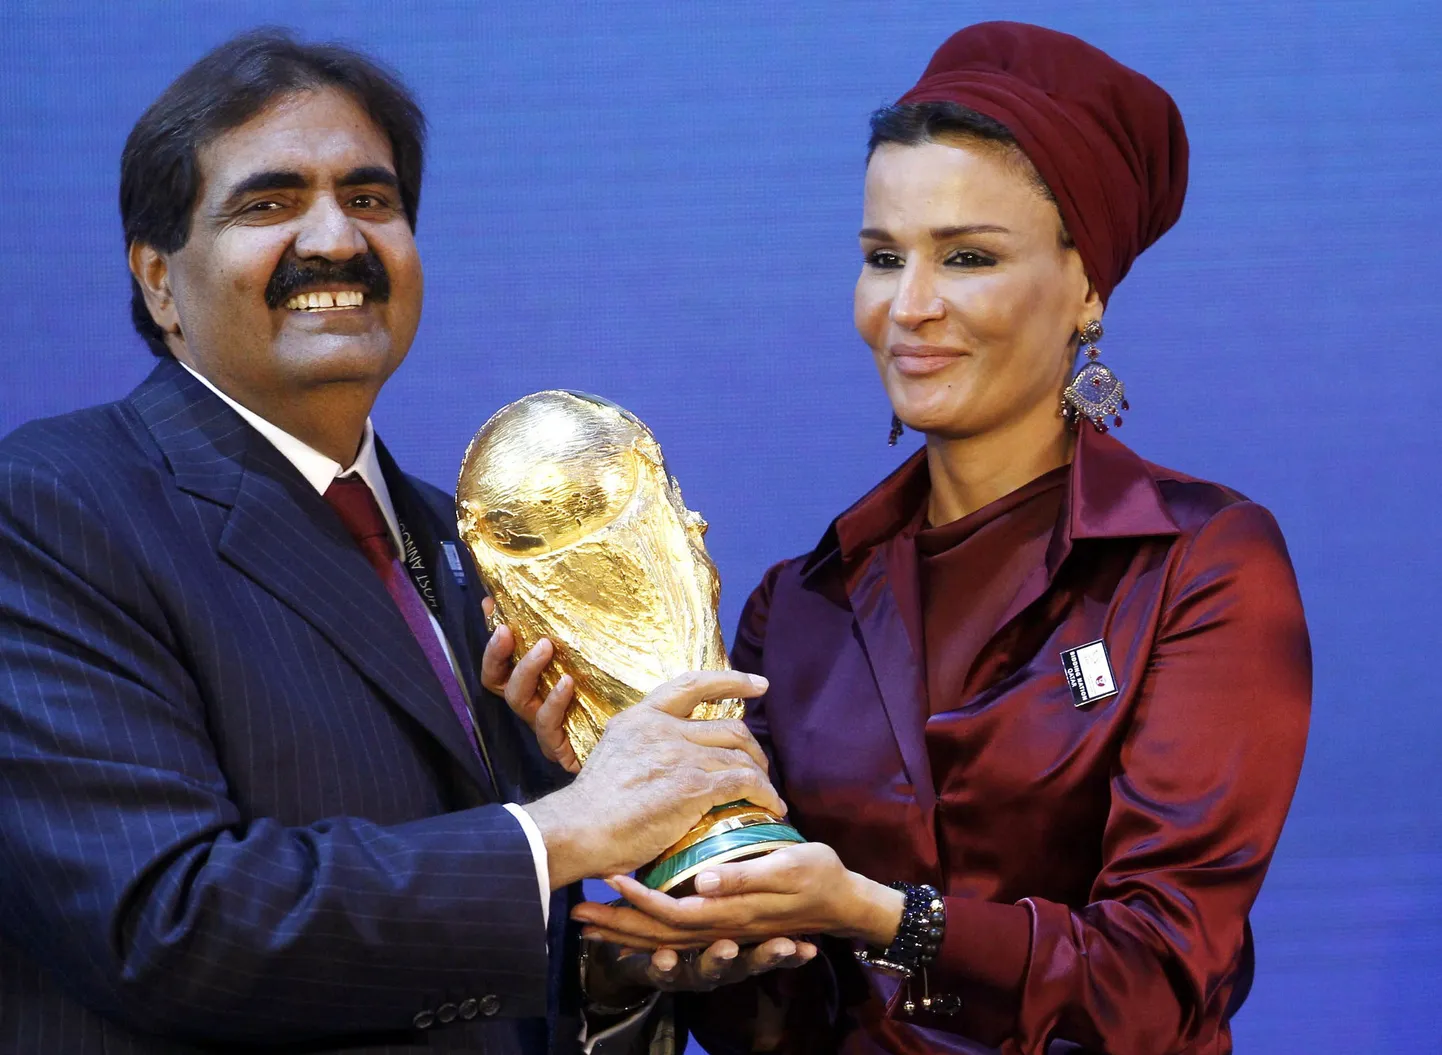 Katari emiir šeik Hamad bin Khalifa võib koos oma naise Moza Bint Nasser al-Misnadiga MMi võidukarika käes hoidmise üle rõõmustada, kuid inimõiguste olukord on riigis enam kui kaheldav.